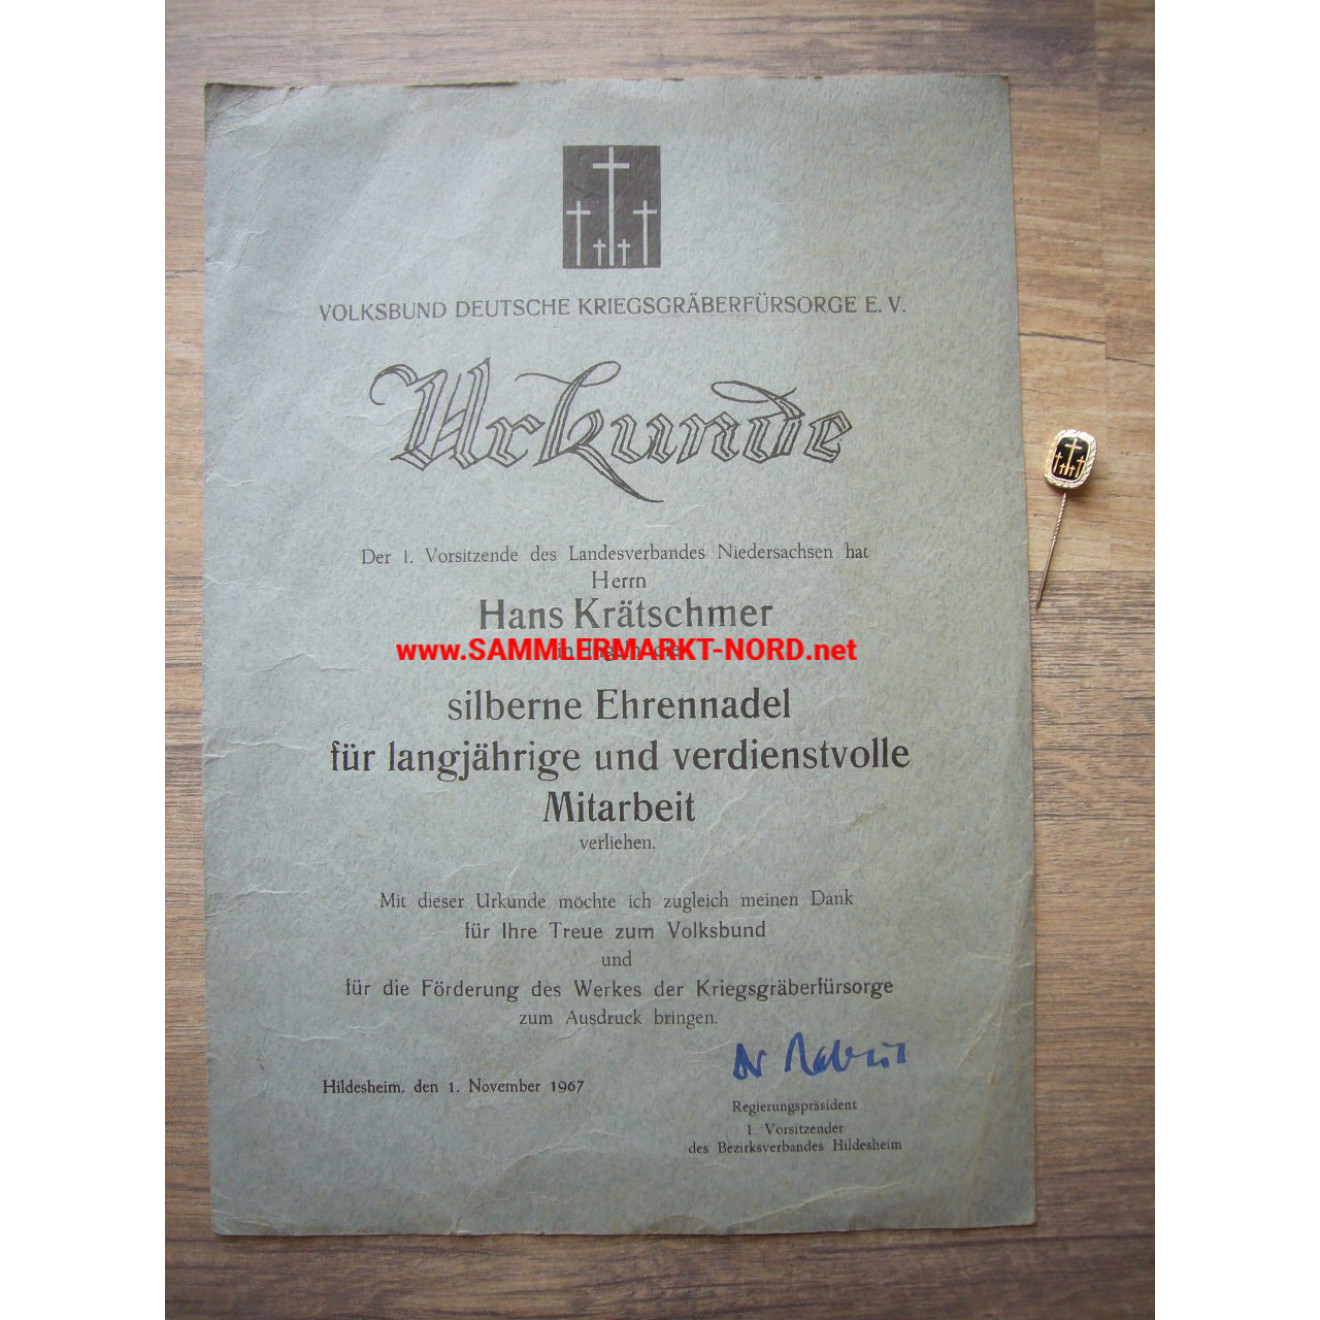 Volksbund Deutsche Kriegsgräberfürsorge - Certificate & Silver Badge of Honor